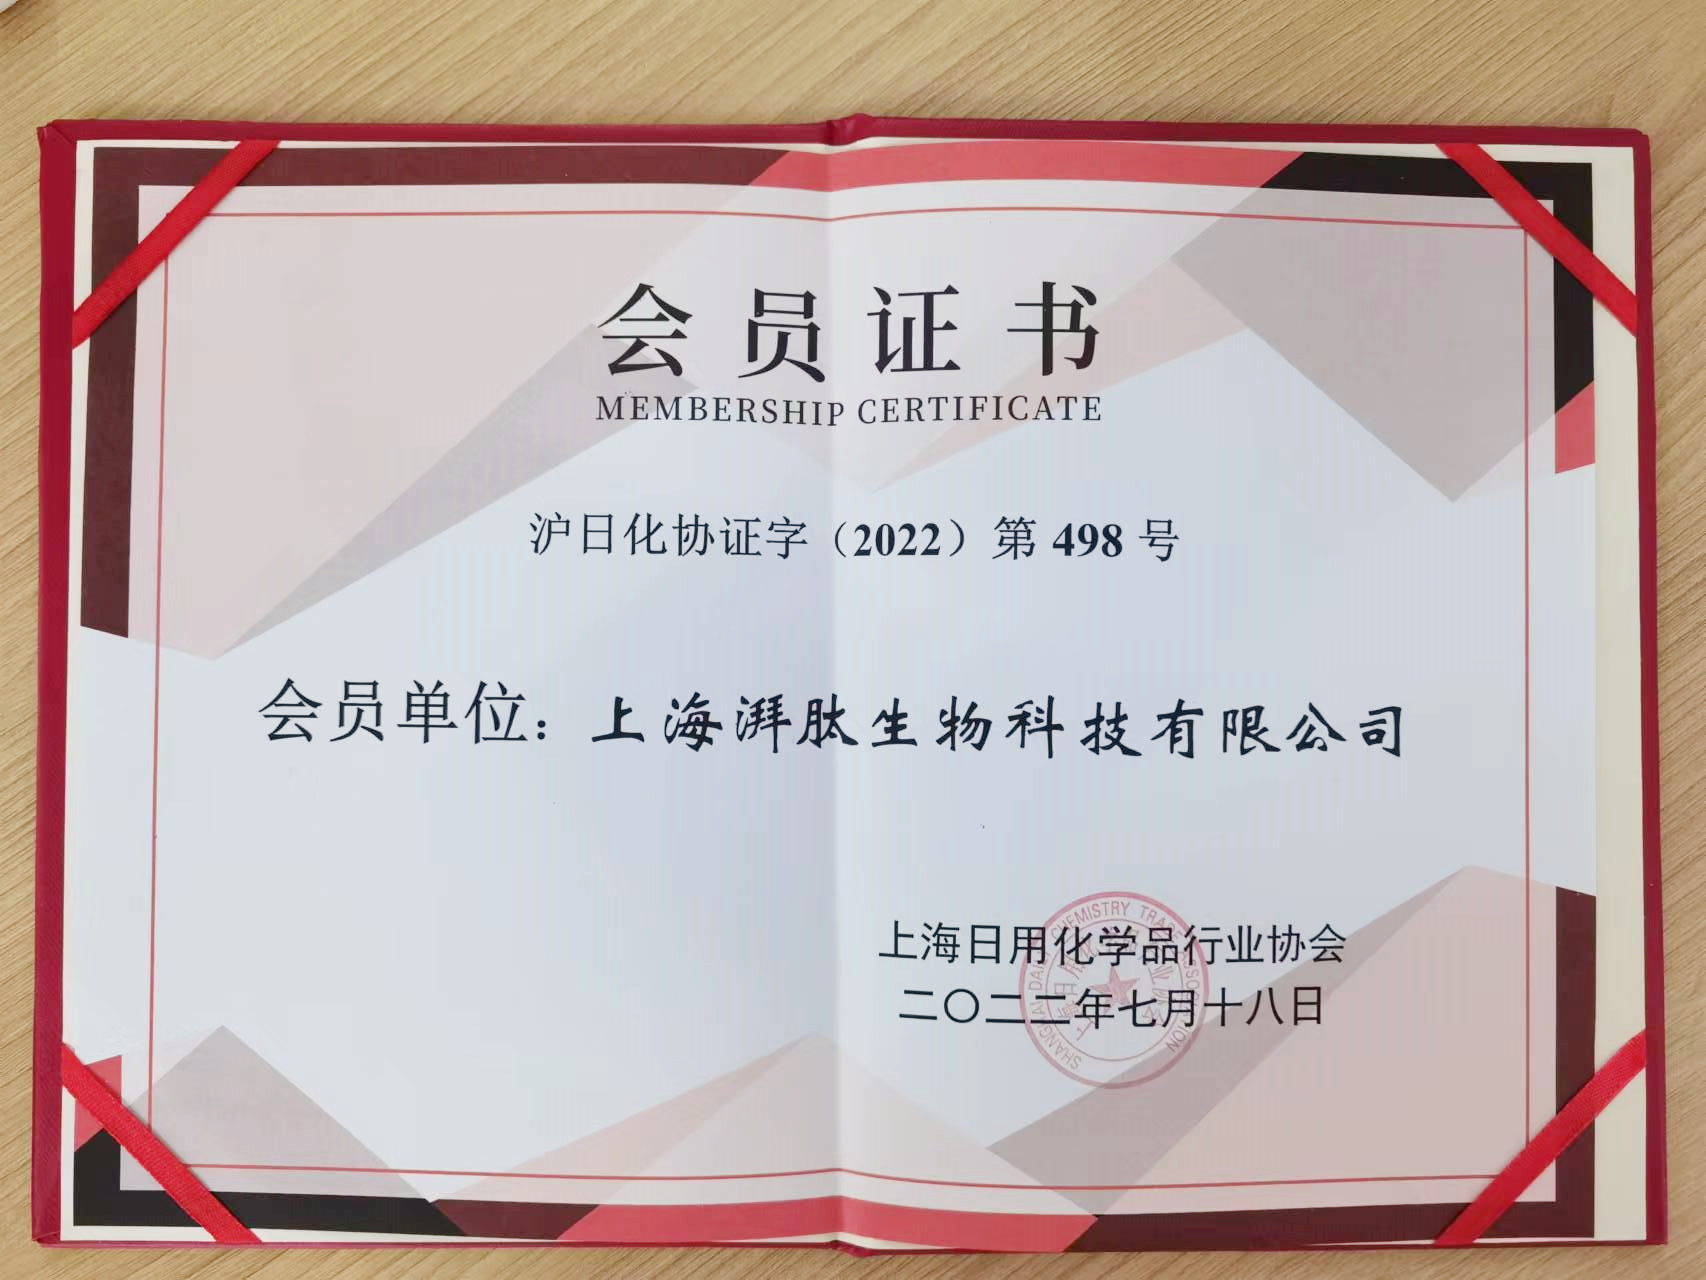 上海湃肽正式成为上海日化协会会员单位